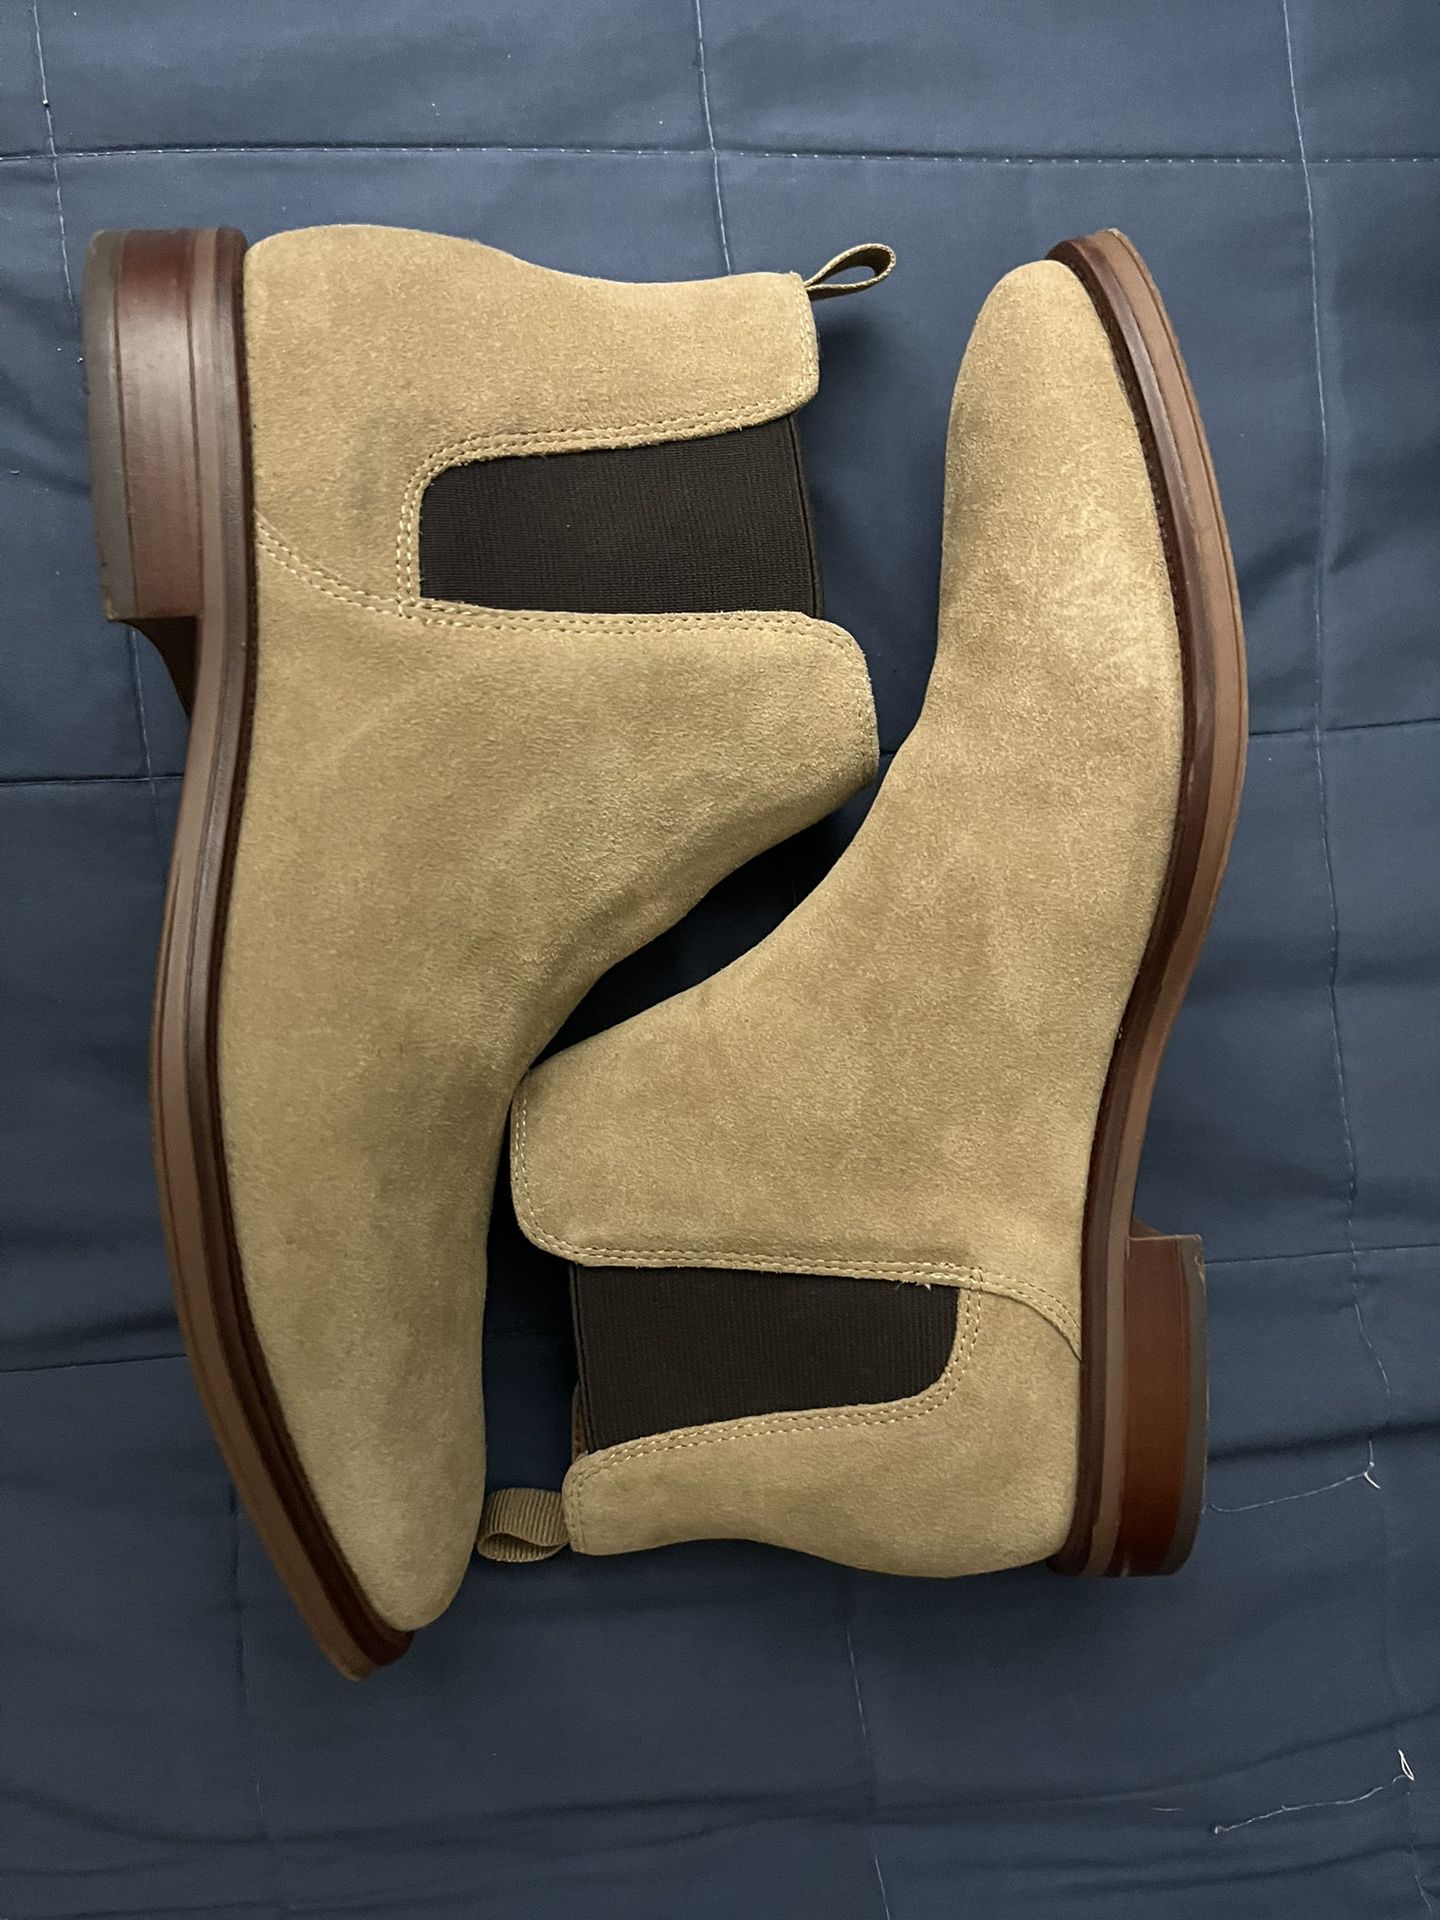 Men ALDO boots size 9.5